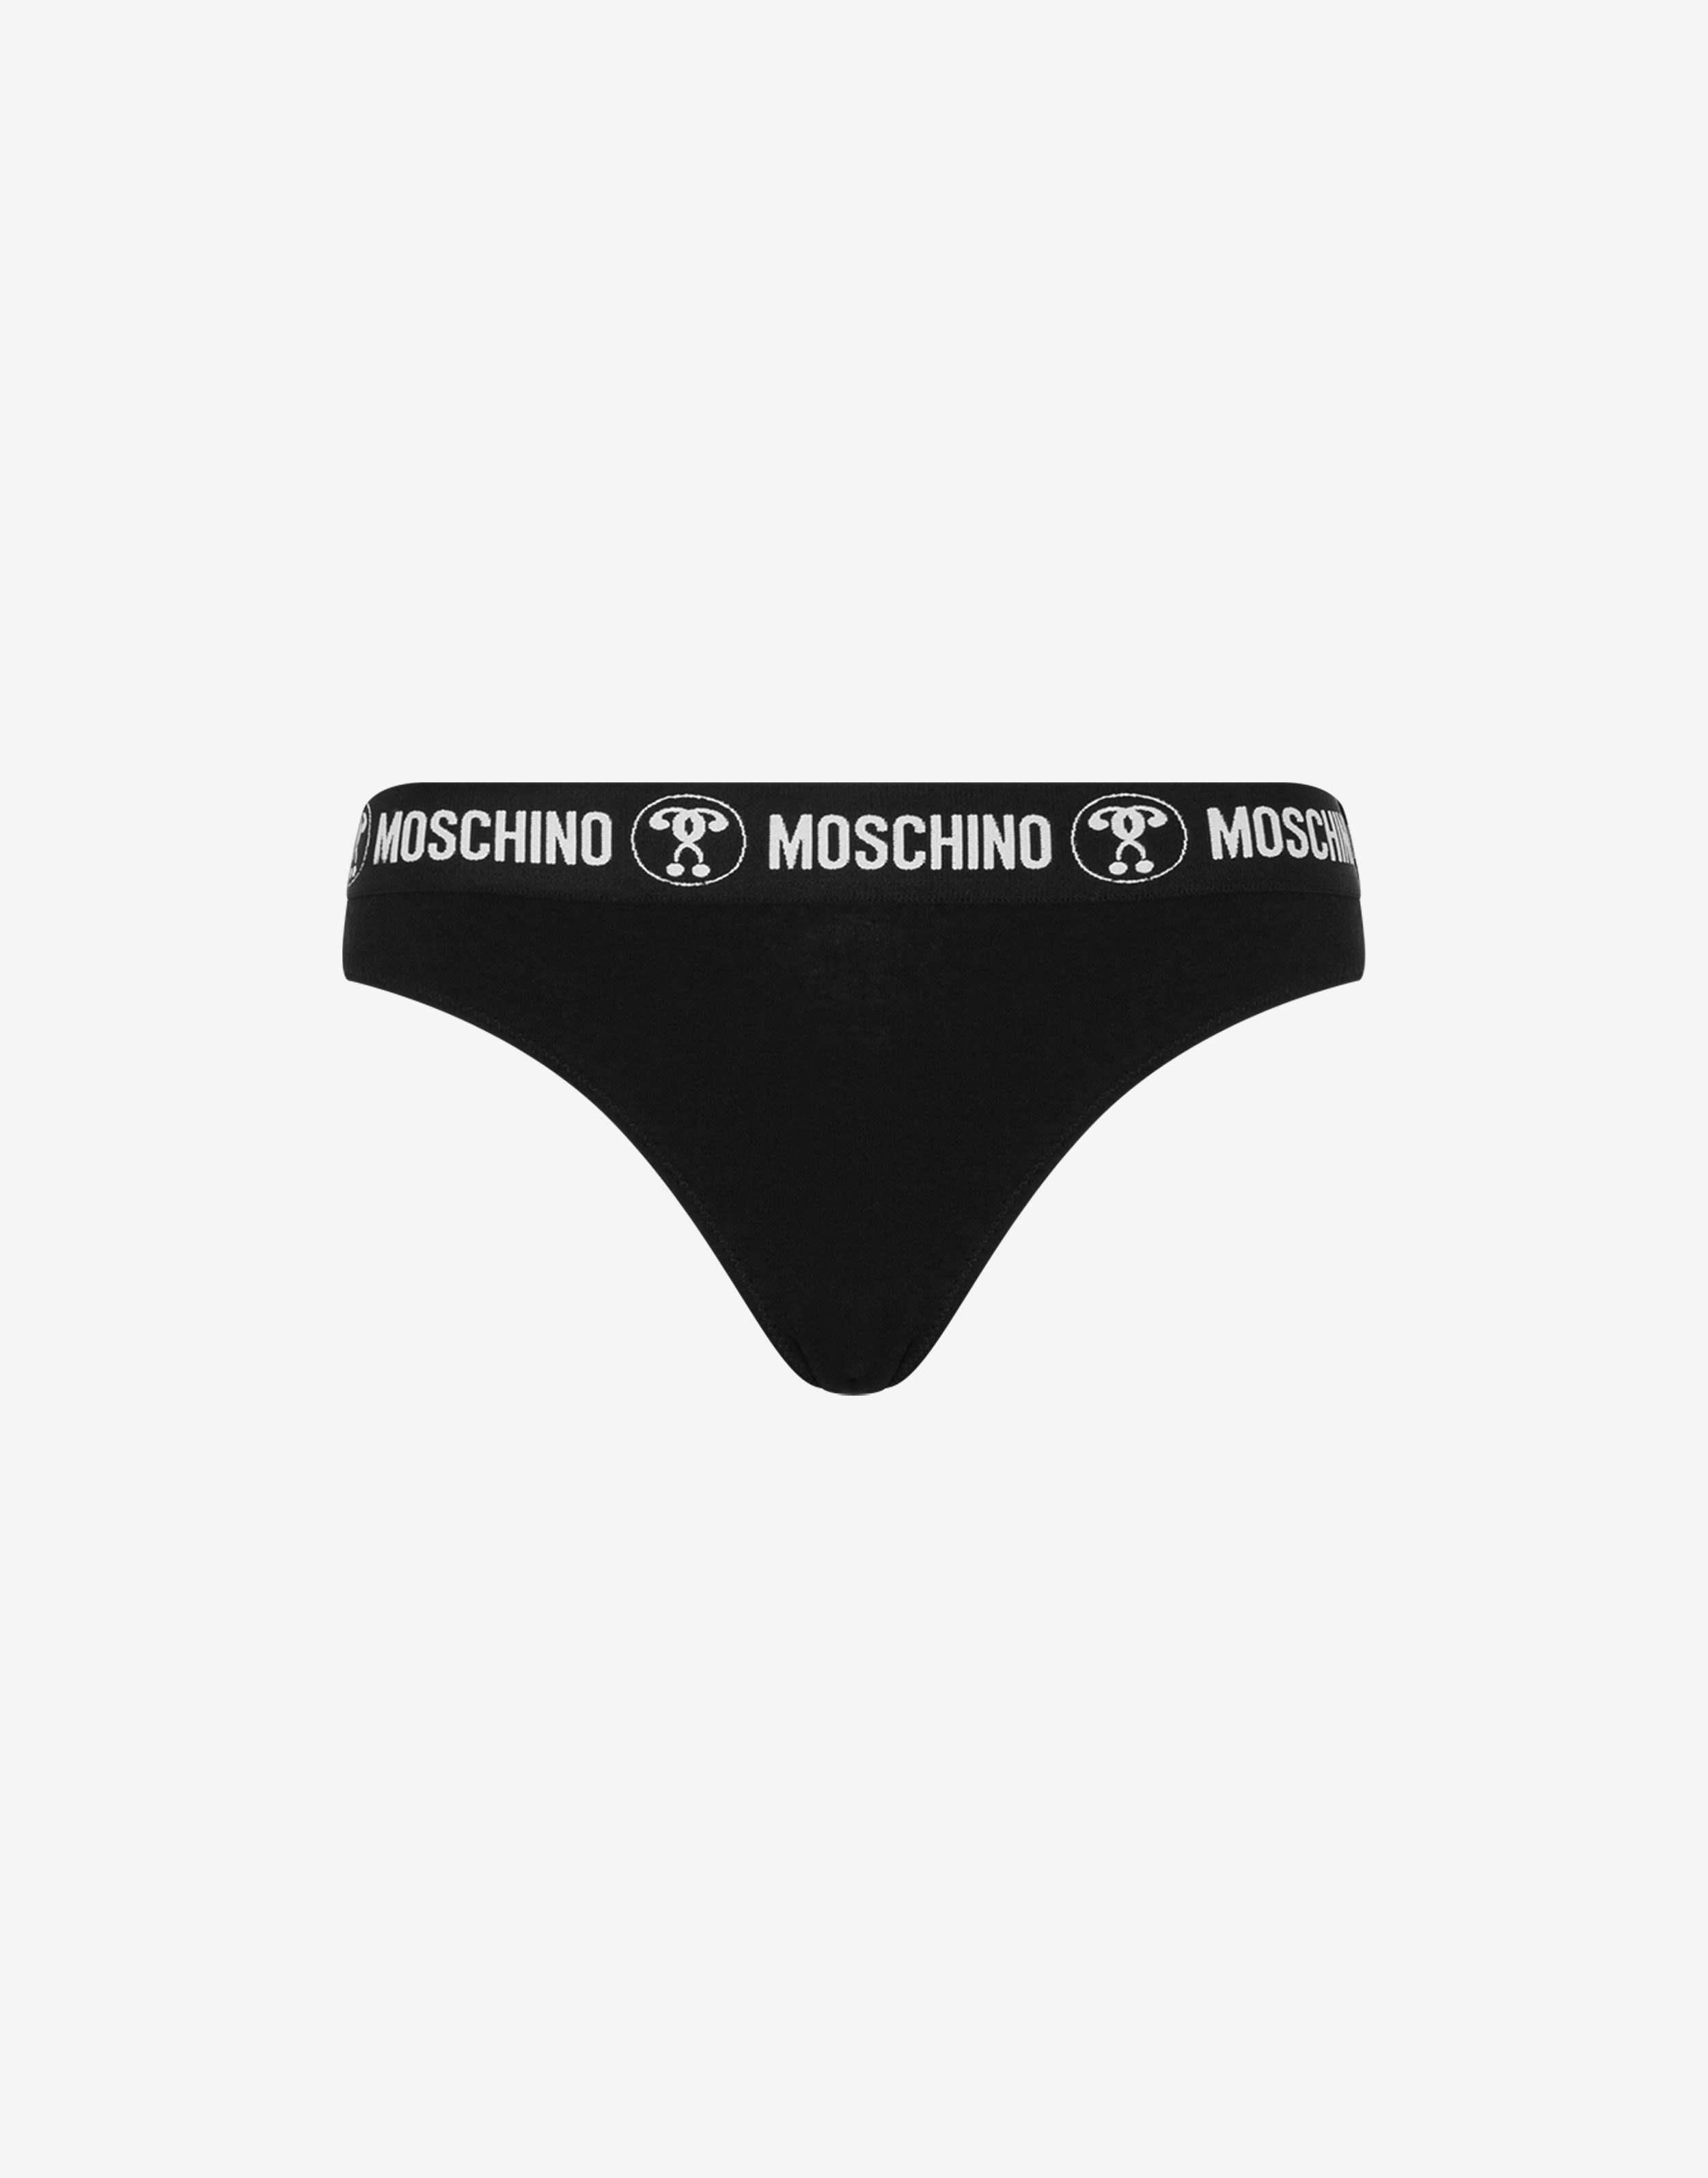 Moschino underwear set - ストッキング